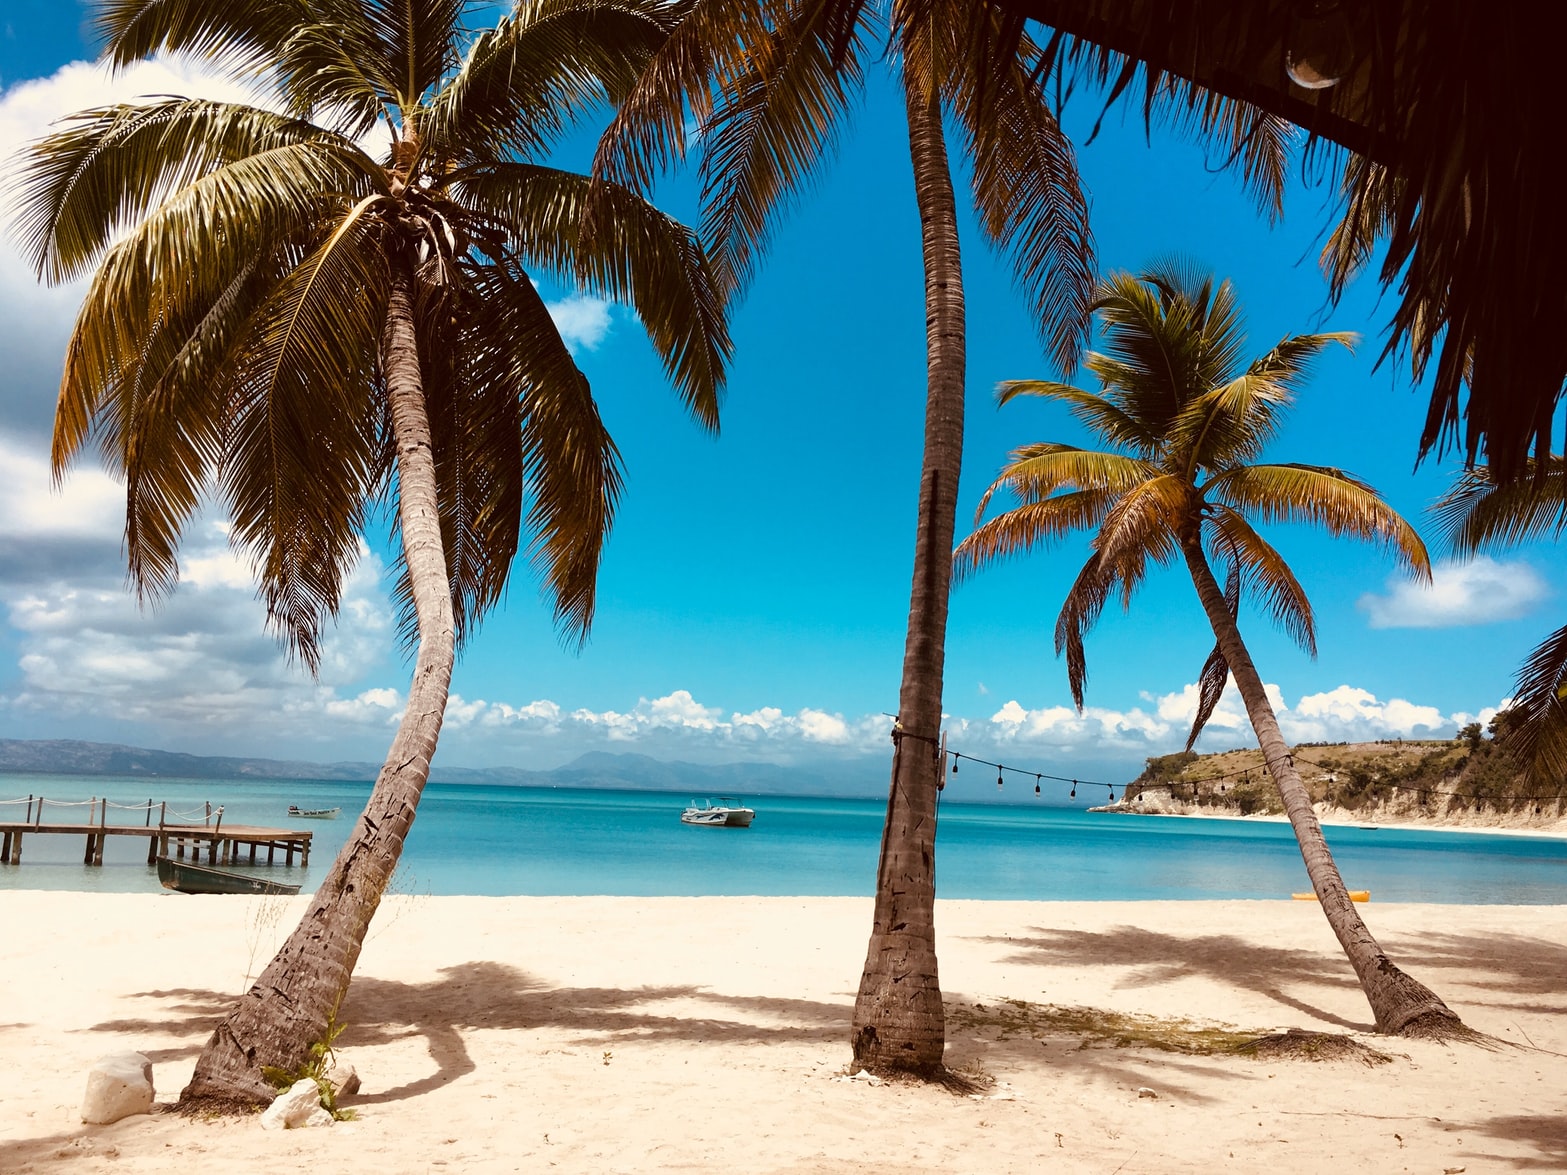 Caribbean beach, palm trees